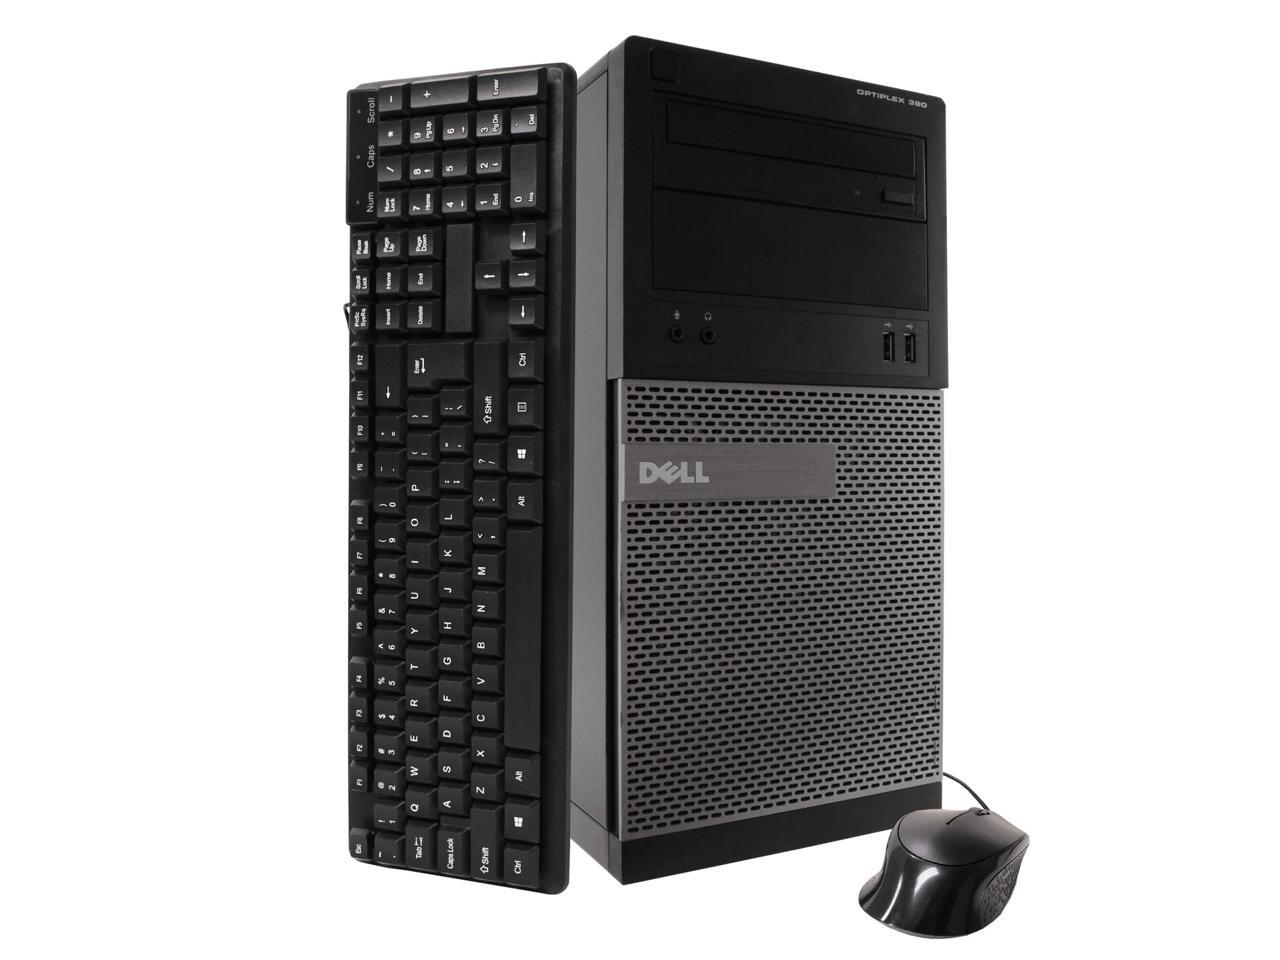 Dell Dell 390 Tower Computer PC, 3.20 GHz Intel i5 Quad Core Gen 2, 8GB DDR3 RAM, 2TB SATA Hard Drive, Windows 10 Home 64 bit, 22" Screen